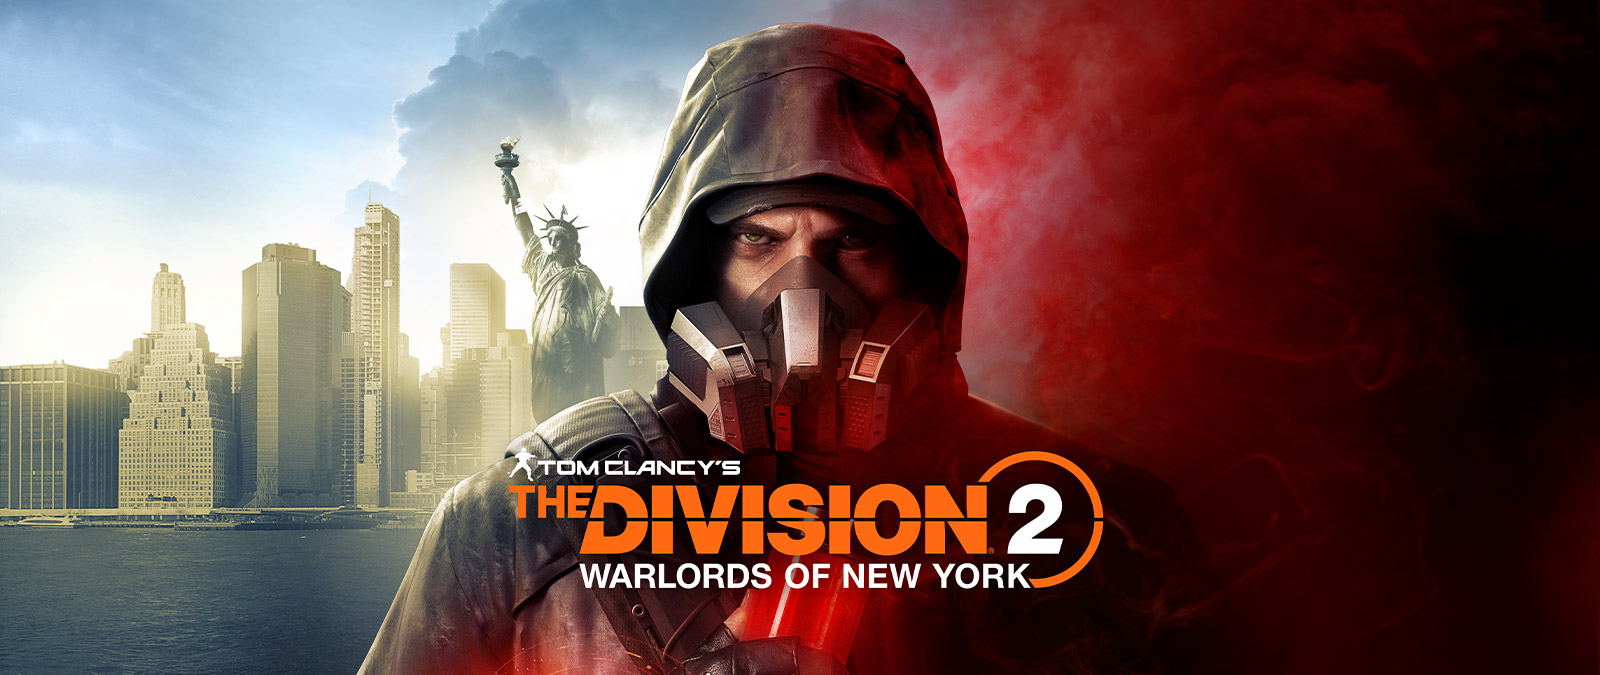 Tom Clancy's The Division 2 Warlords of New York, Aaron Keener mit Gasmaske vor der Freiheitsstatue stehend